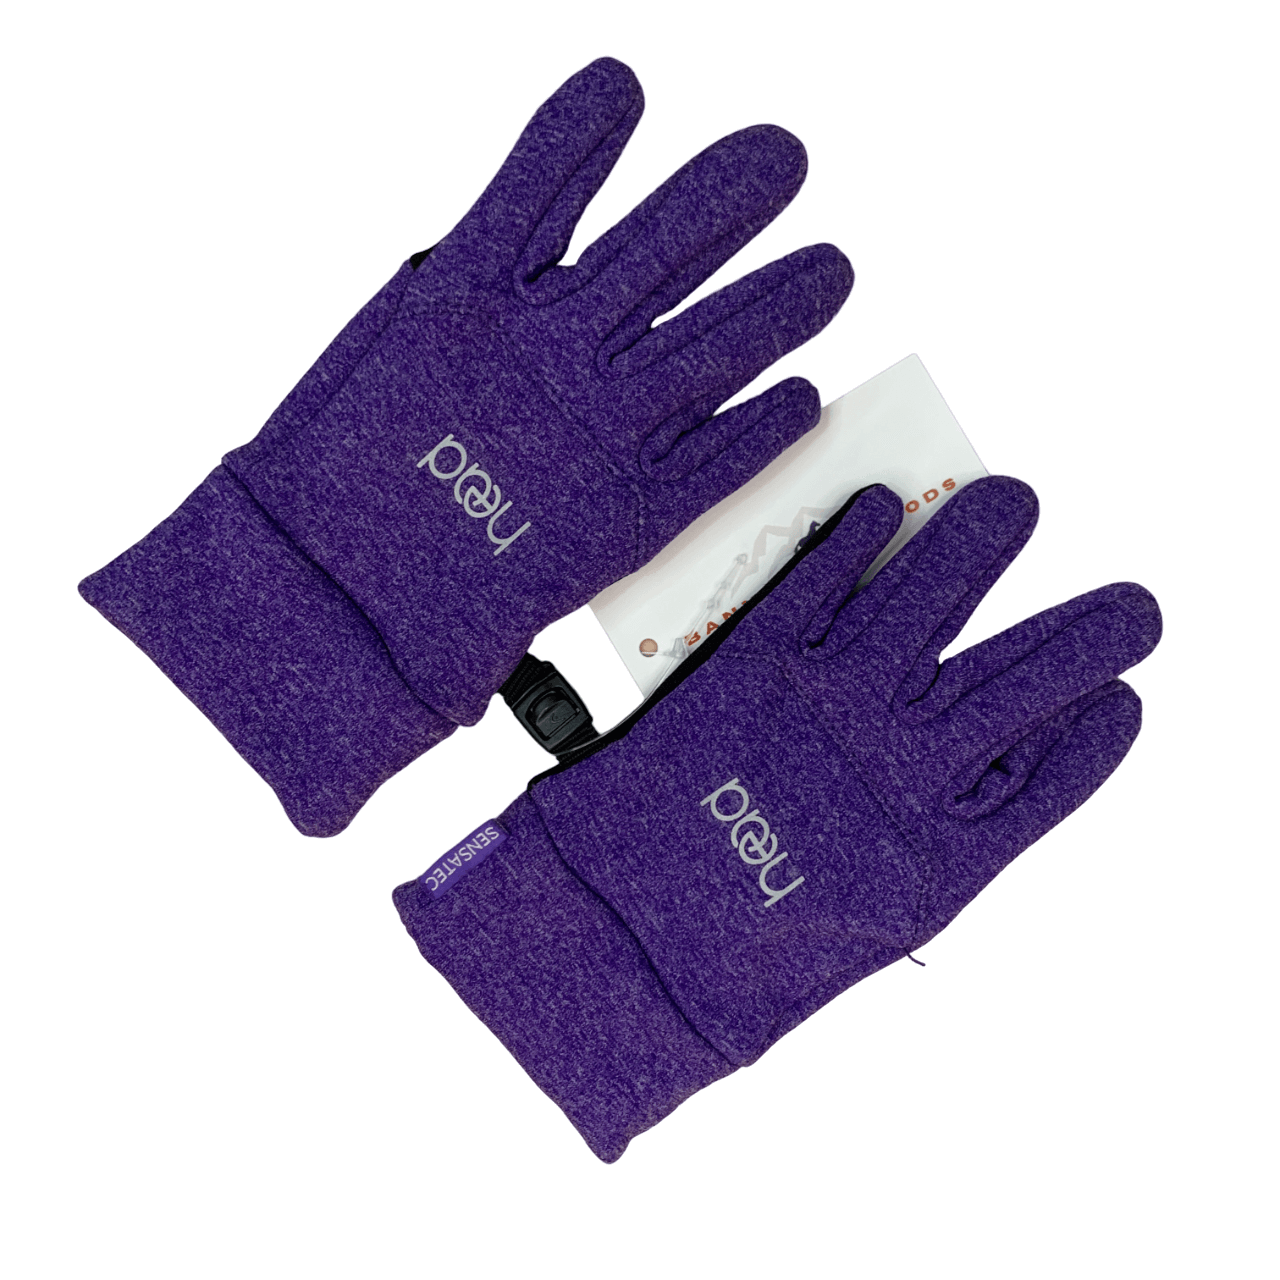 HEAD Touchscreen Gloves in Violet Heather - Kid's Medium